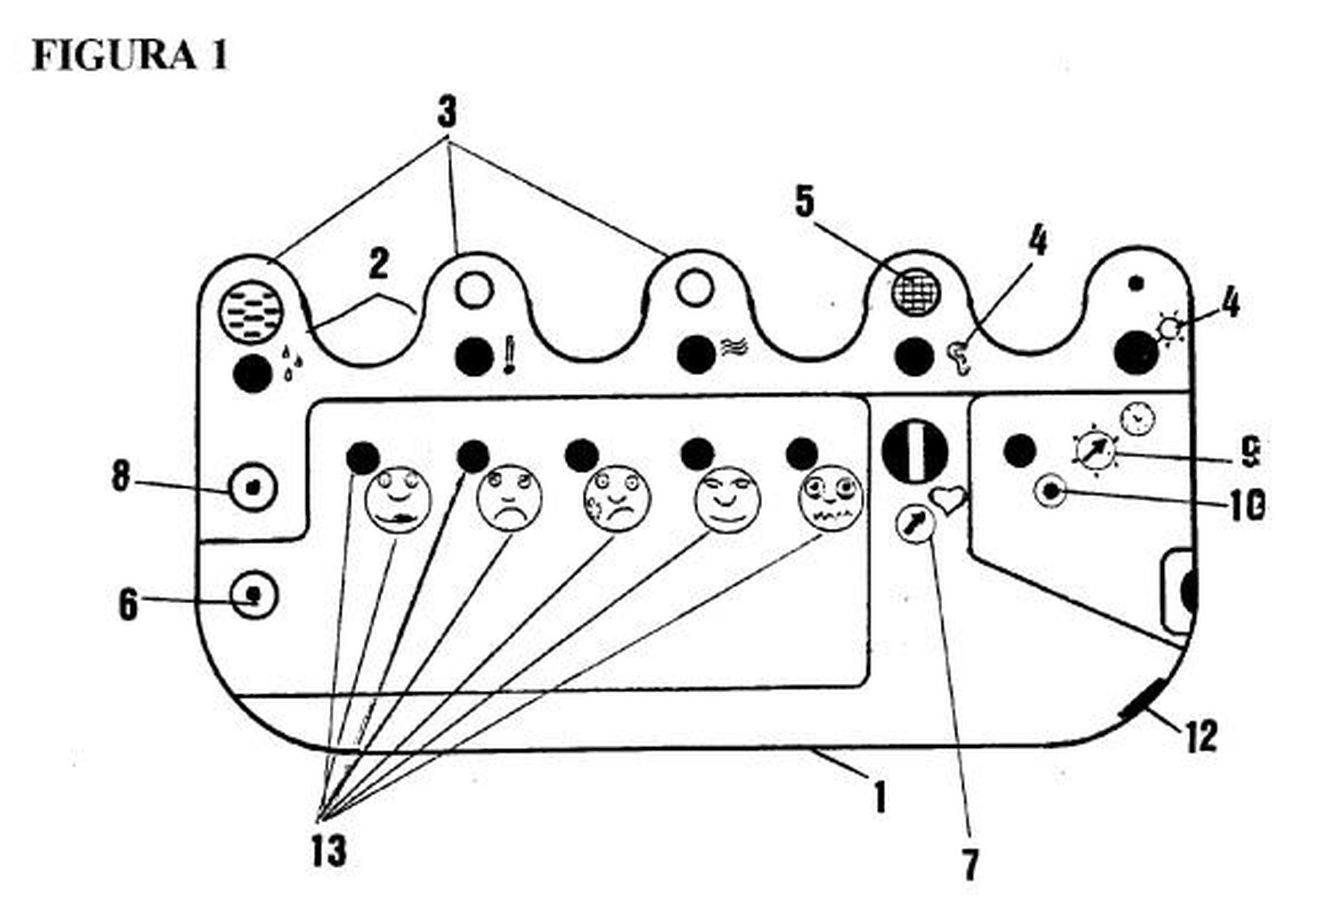 Dibujo técnico de la patente sobre el dispositivo de Pedro Monagas.